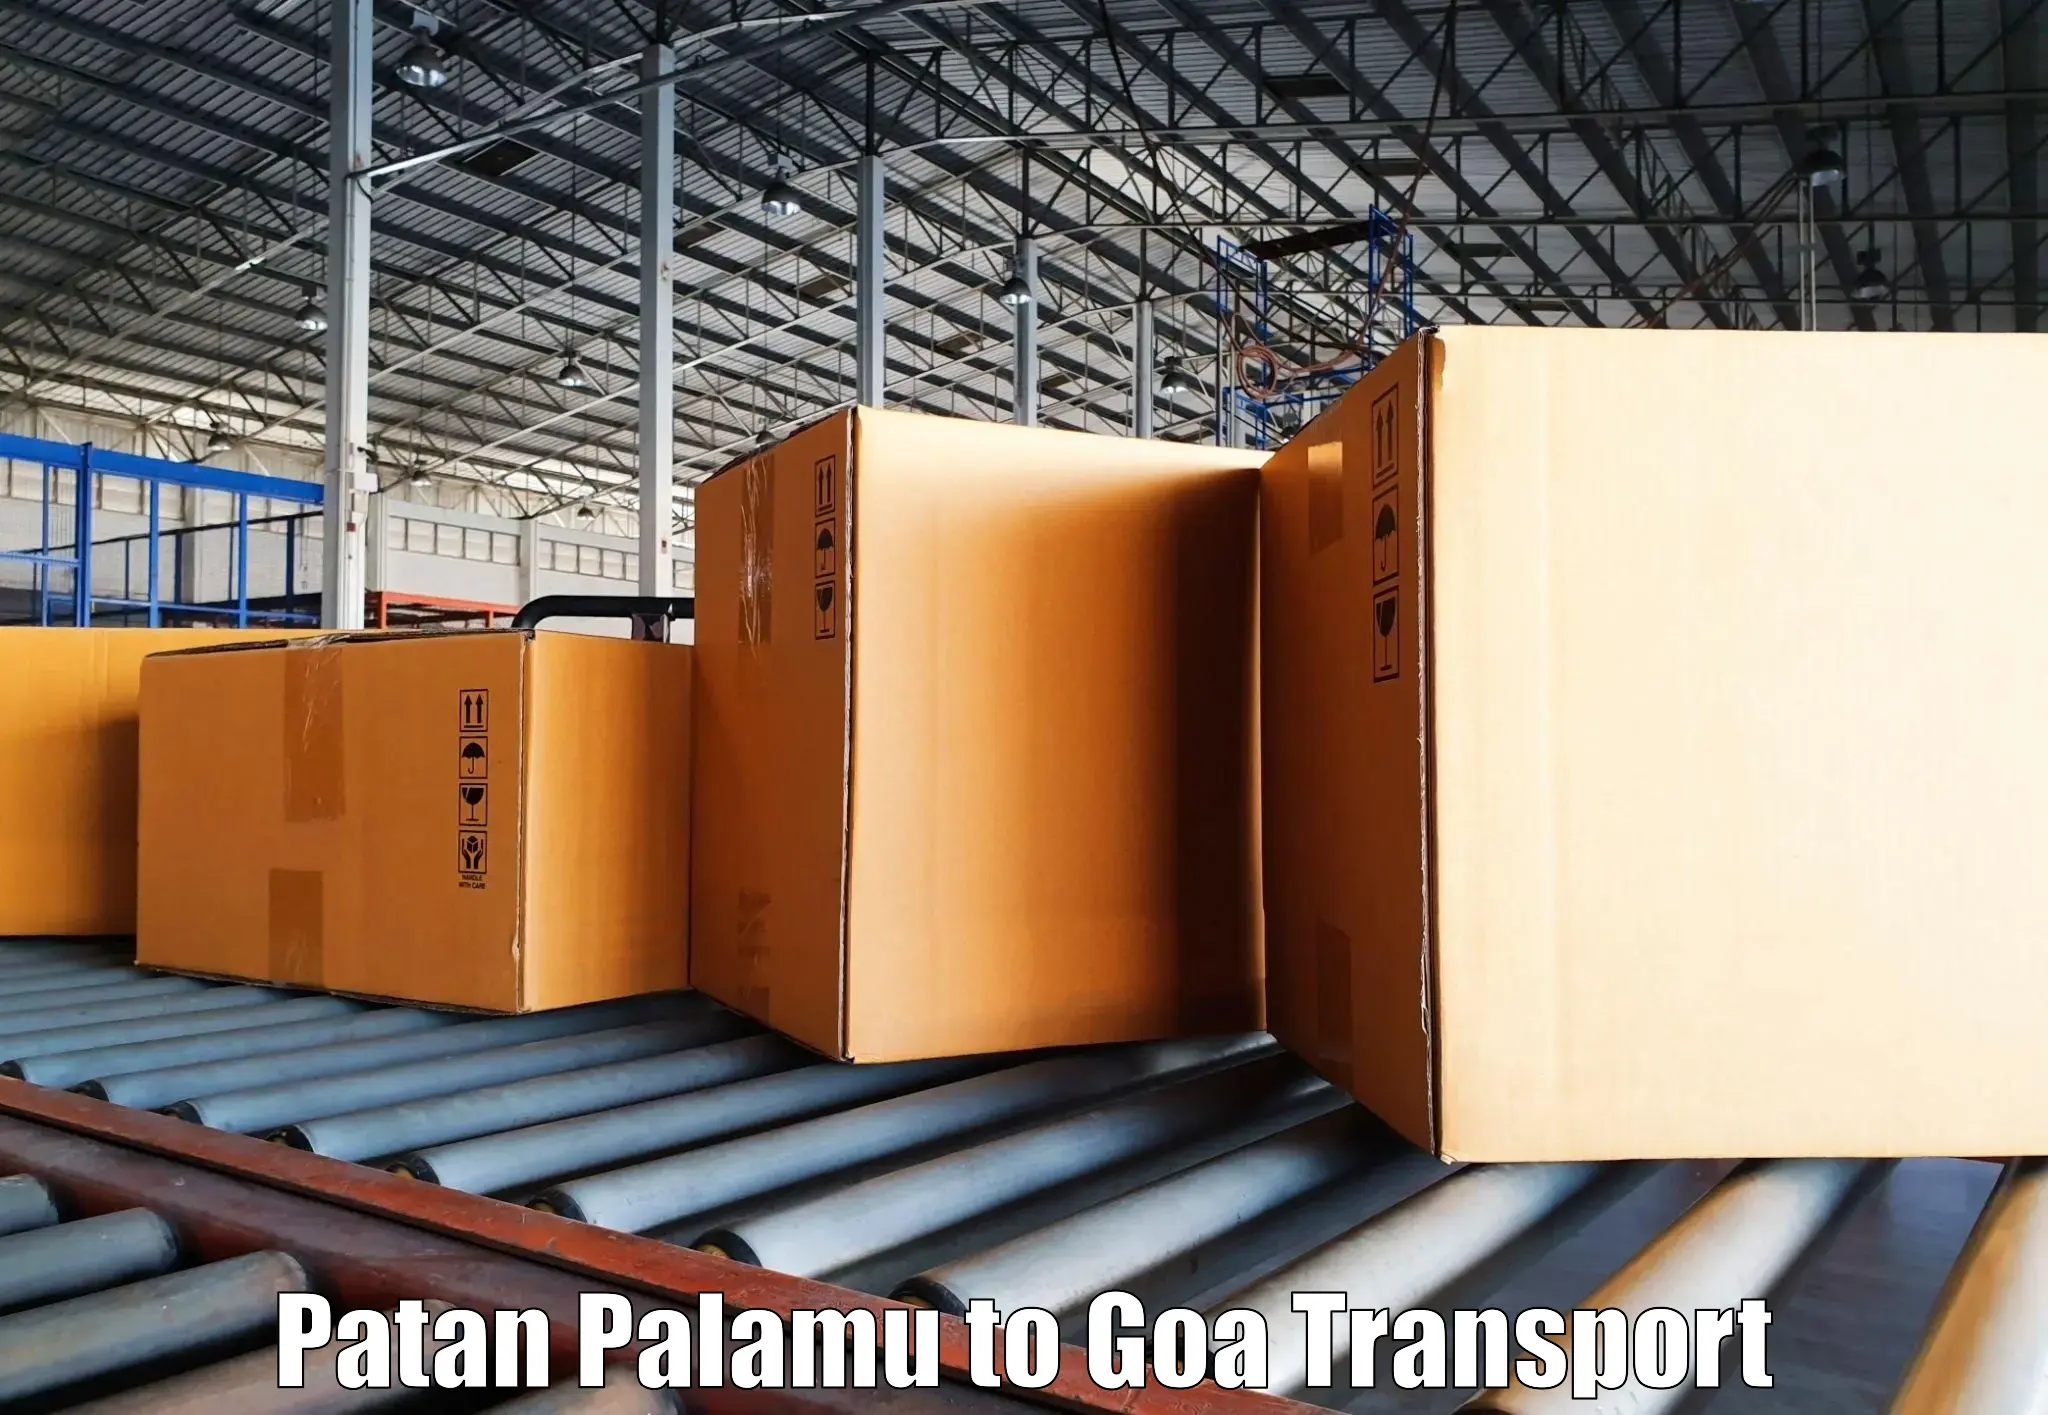 Nearest transport service Patan Palamu to Bardez